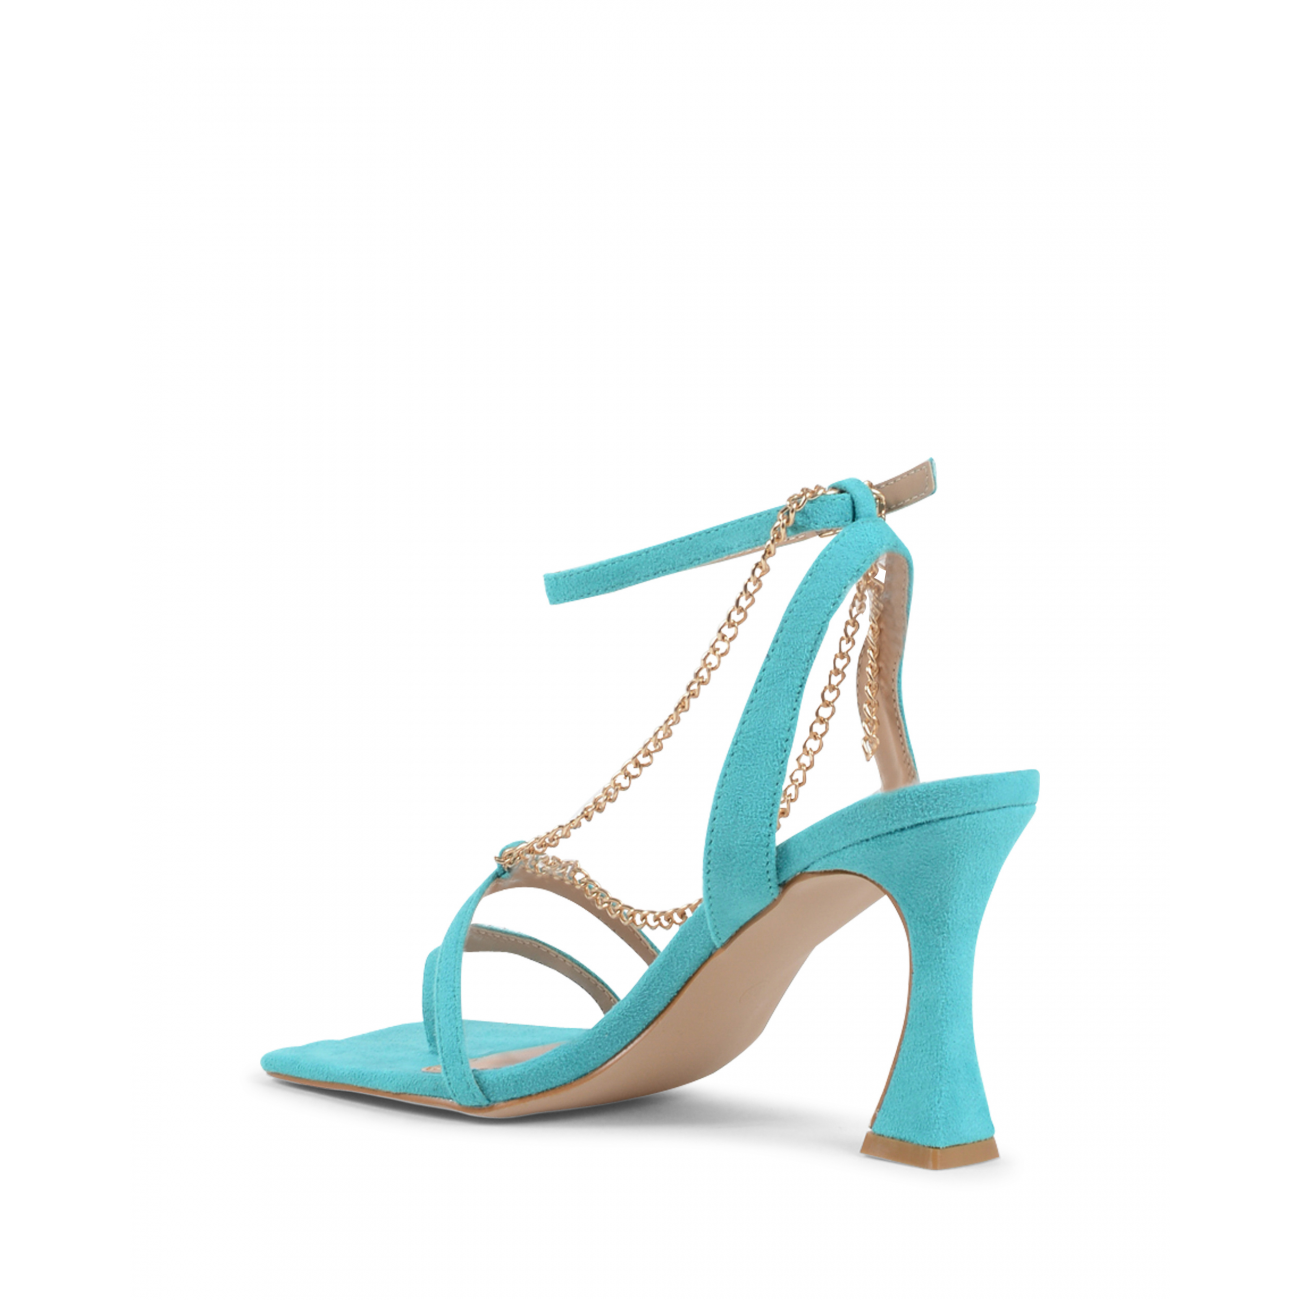 19V69 Italia Womens Ankle Strap Sandal Turquoise V81817 TURQUOISE